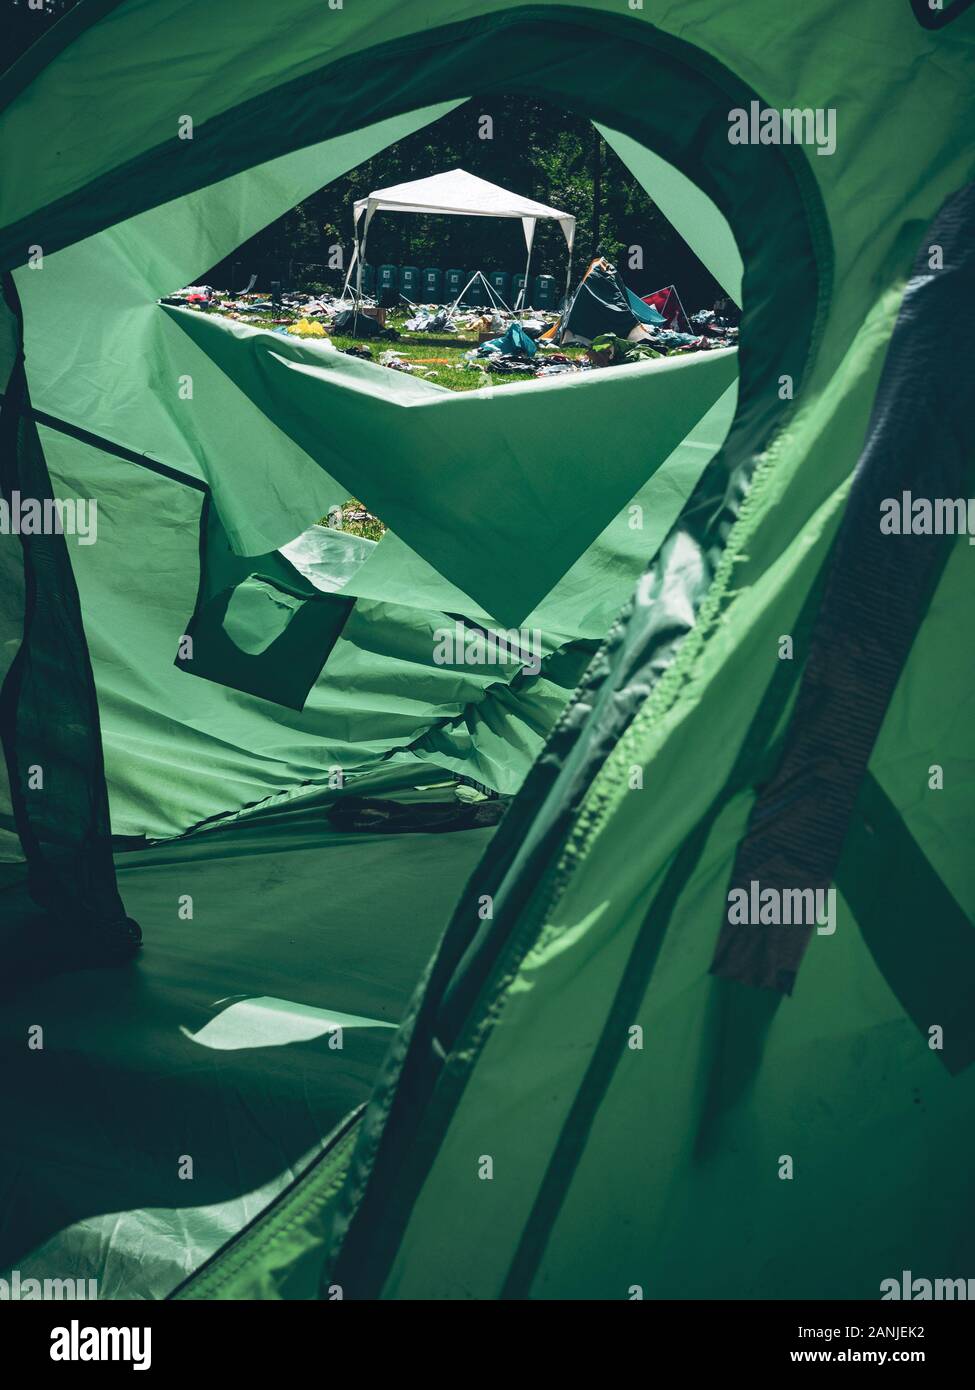 Guardare fuori da una tenda verde su un festival di musica con i rifiuti in tutto il luogo Foto Stock